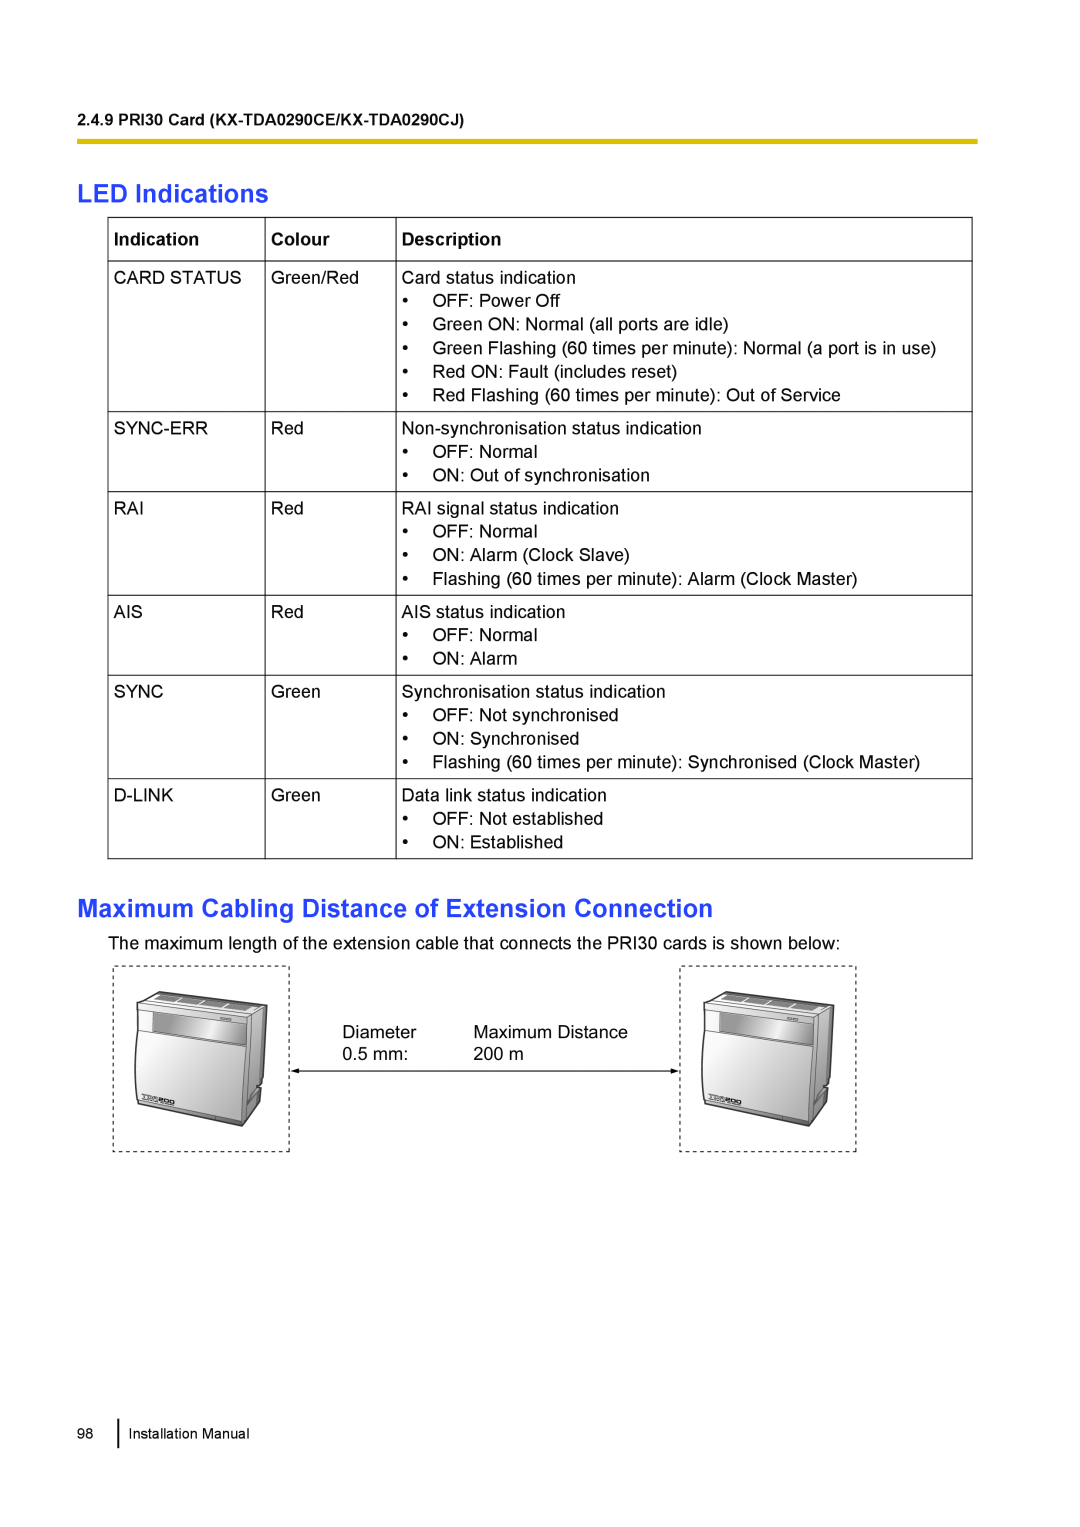 Panasonic KX-TDA100 LED Indications, Maximum Cabling Distance of Extension Connection, Colour, Description 